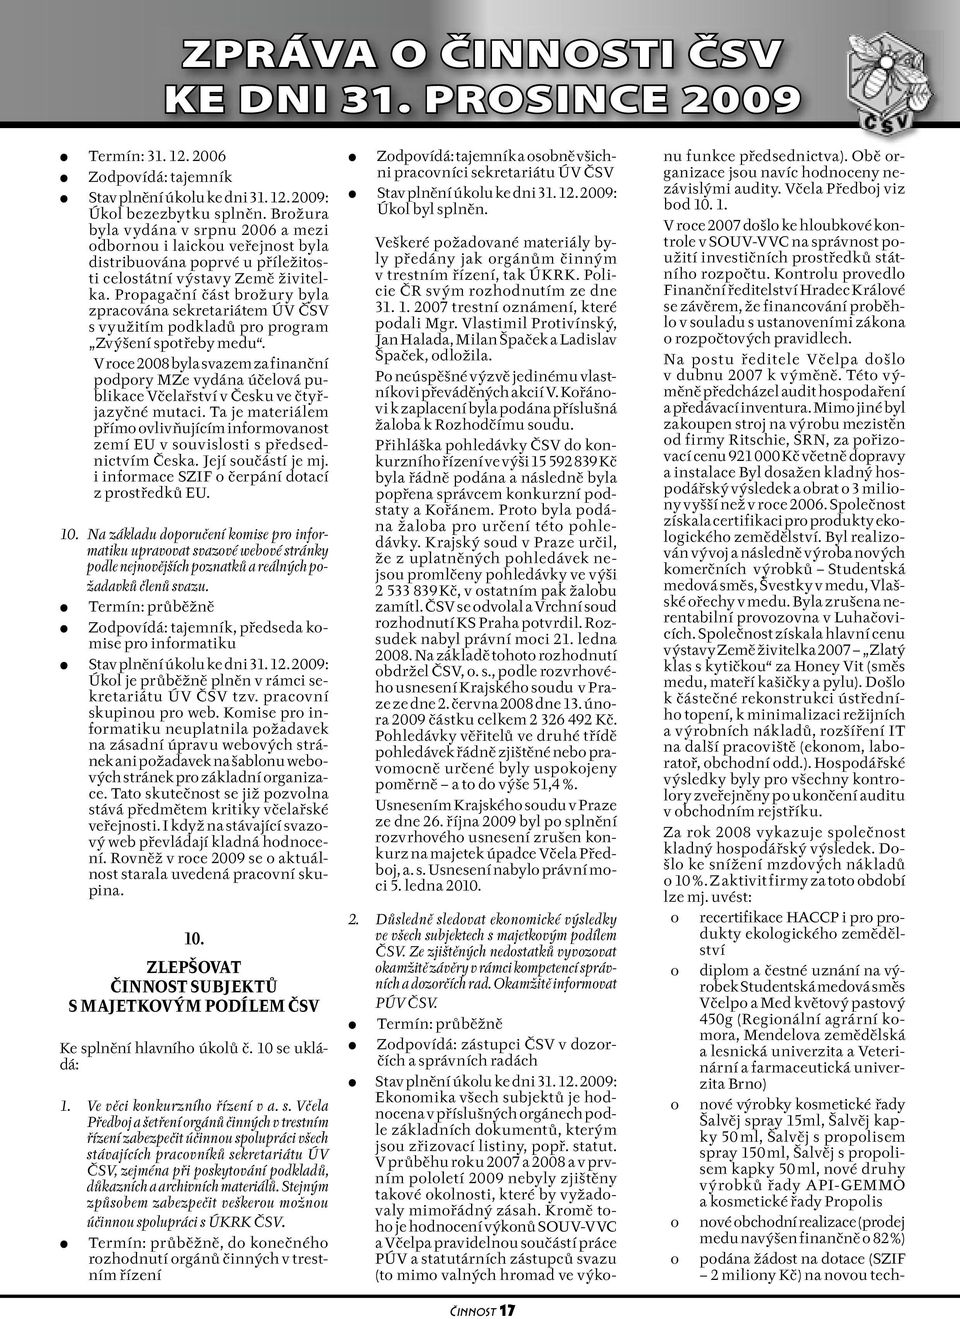 V roce 2008 byla svazem za finanční podpory MZe vydána účelová publikace Včelařství v Česku ve čtyřjazyčné mutaci.